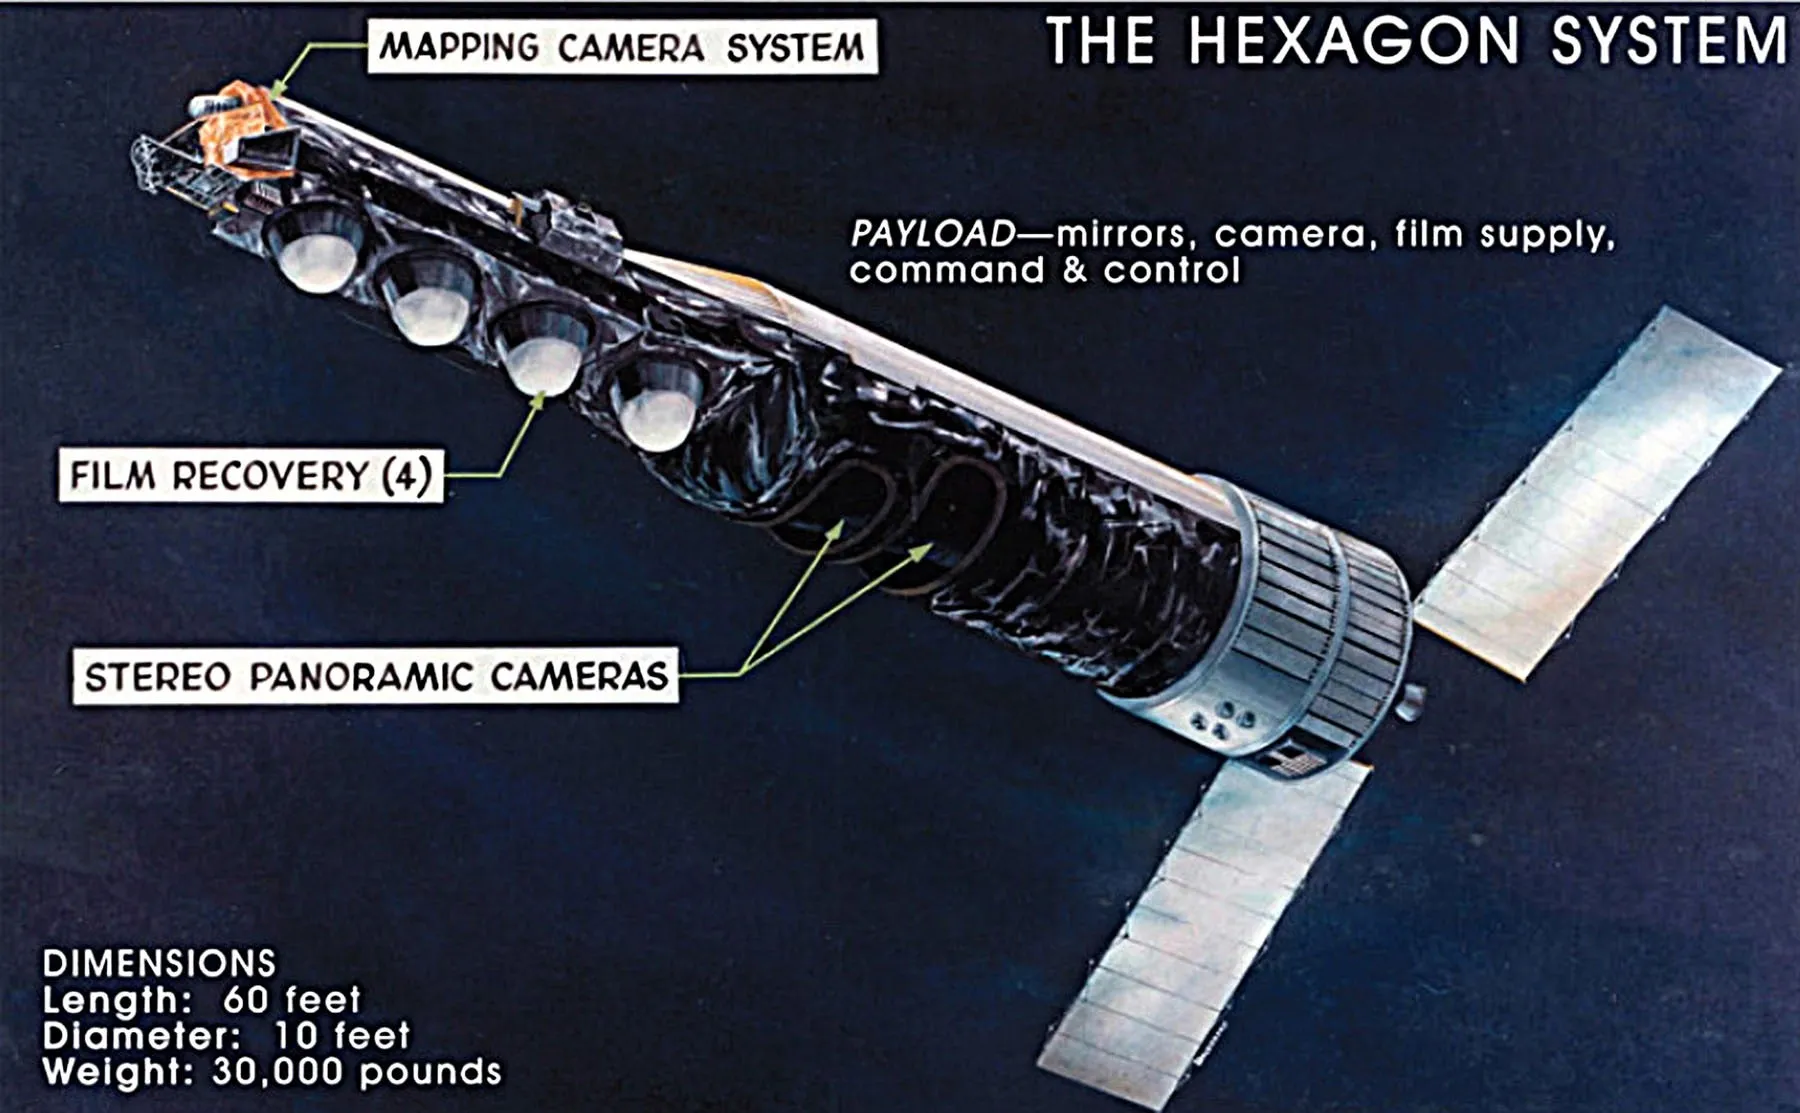 Спутник KH-9 Hexagon Военно-воздушных сил, изображен выше, развернул крошечный спутник IRCB (S73-7) в 1974 году